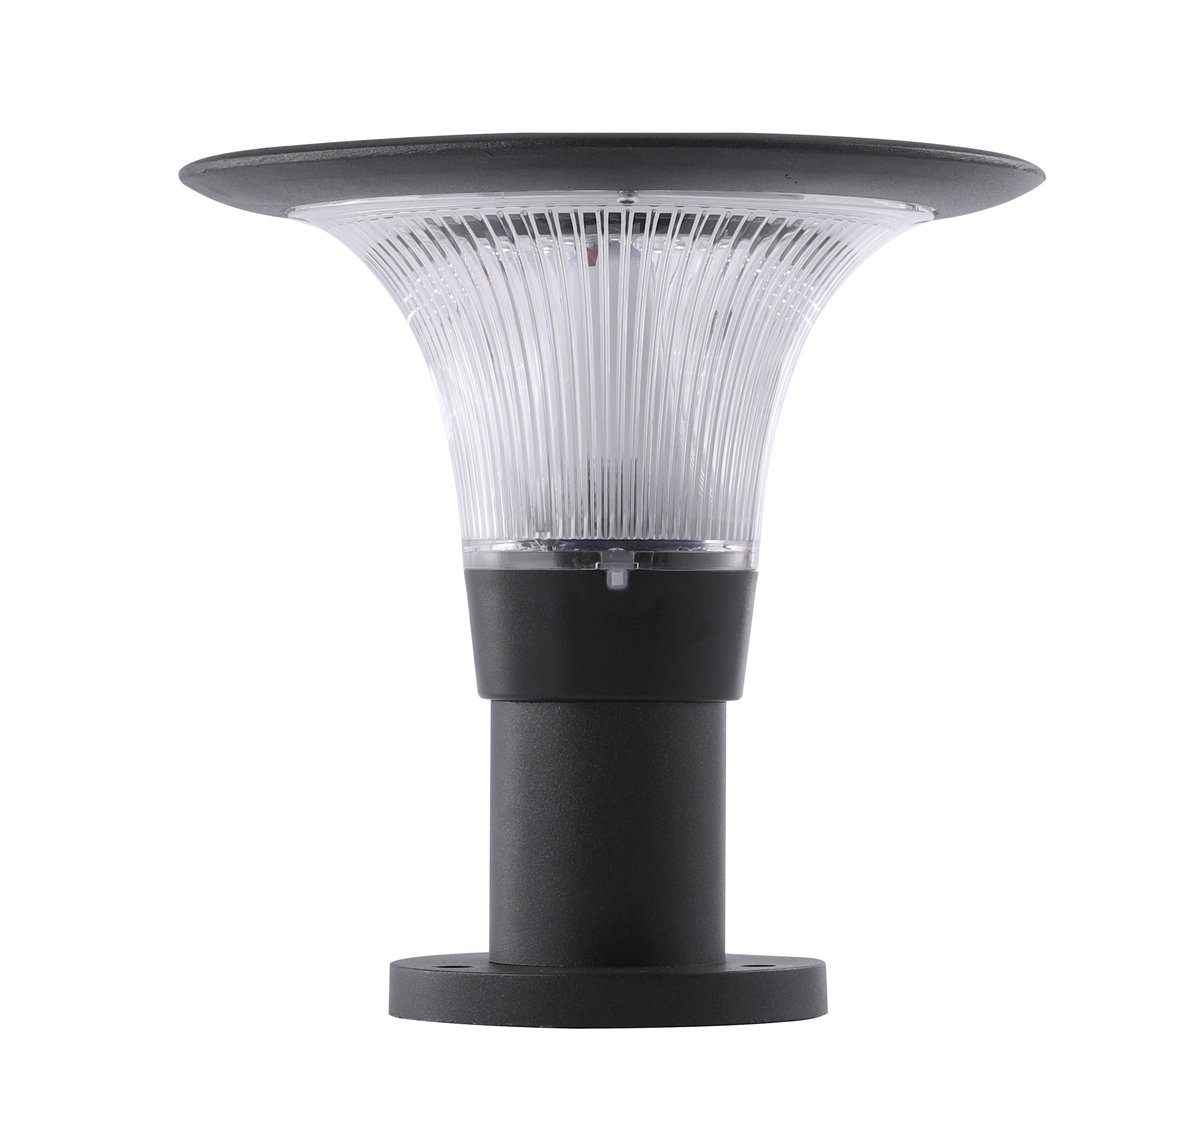 Arnusa LED LED Dimmbar, 360lm Smarte APP Gartenlampe, mit fest RGB Farbwechsel Solarlampe Solarleuchte Kaltweiß, Farbsteuerung, integriert, Warmweiß, Weiß, Farbwechsler, helle Gartenleuchte